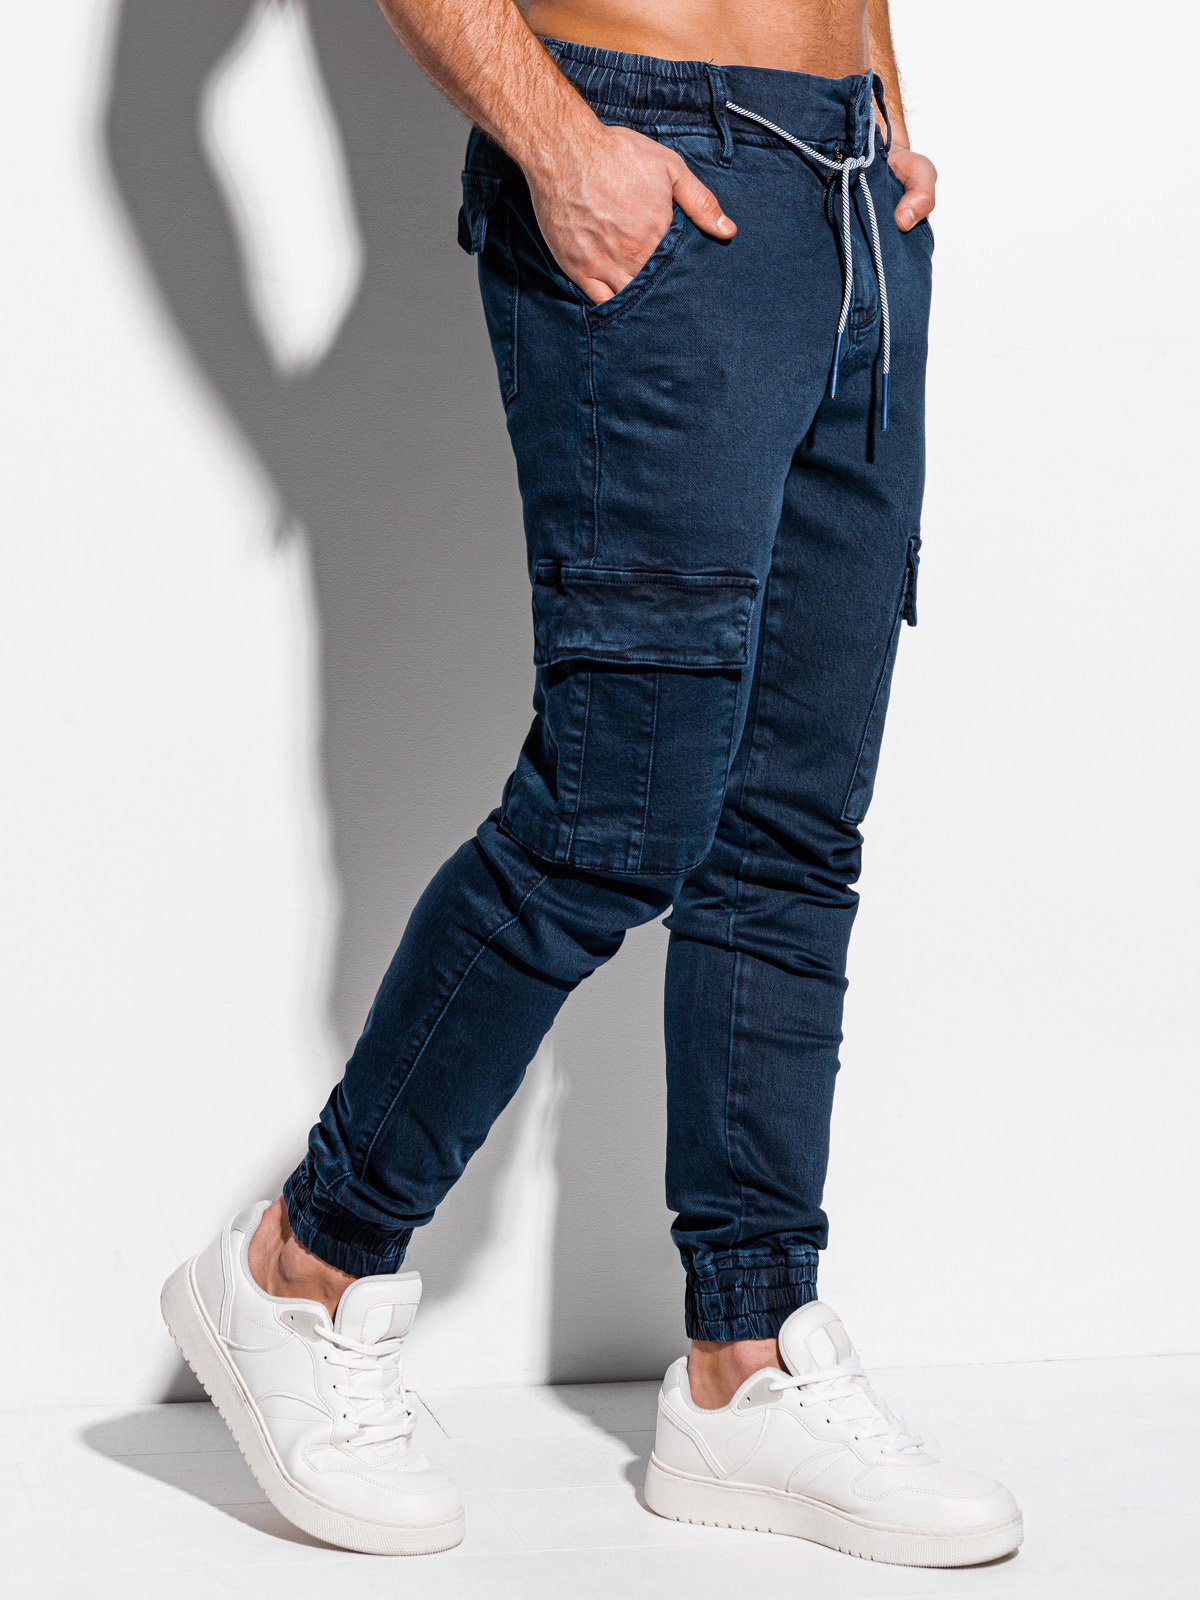 Men's pants joggers P983 - navy | MODONE wholesale - Clothing For Men